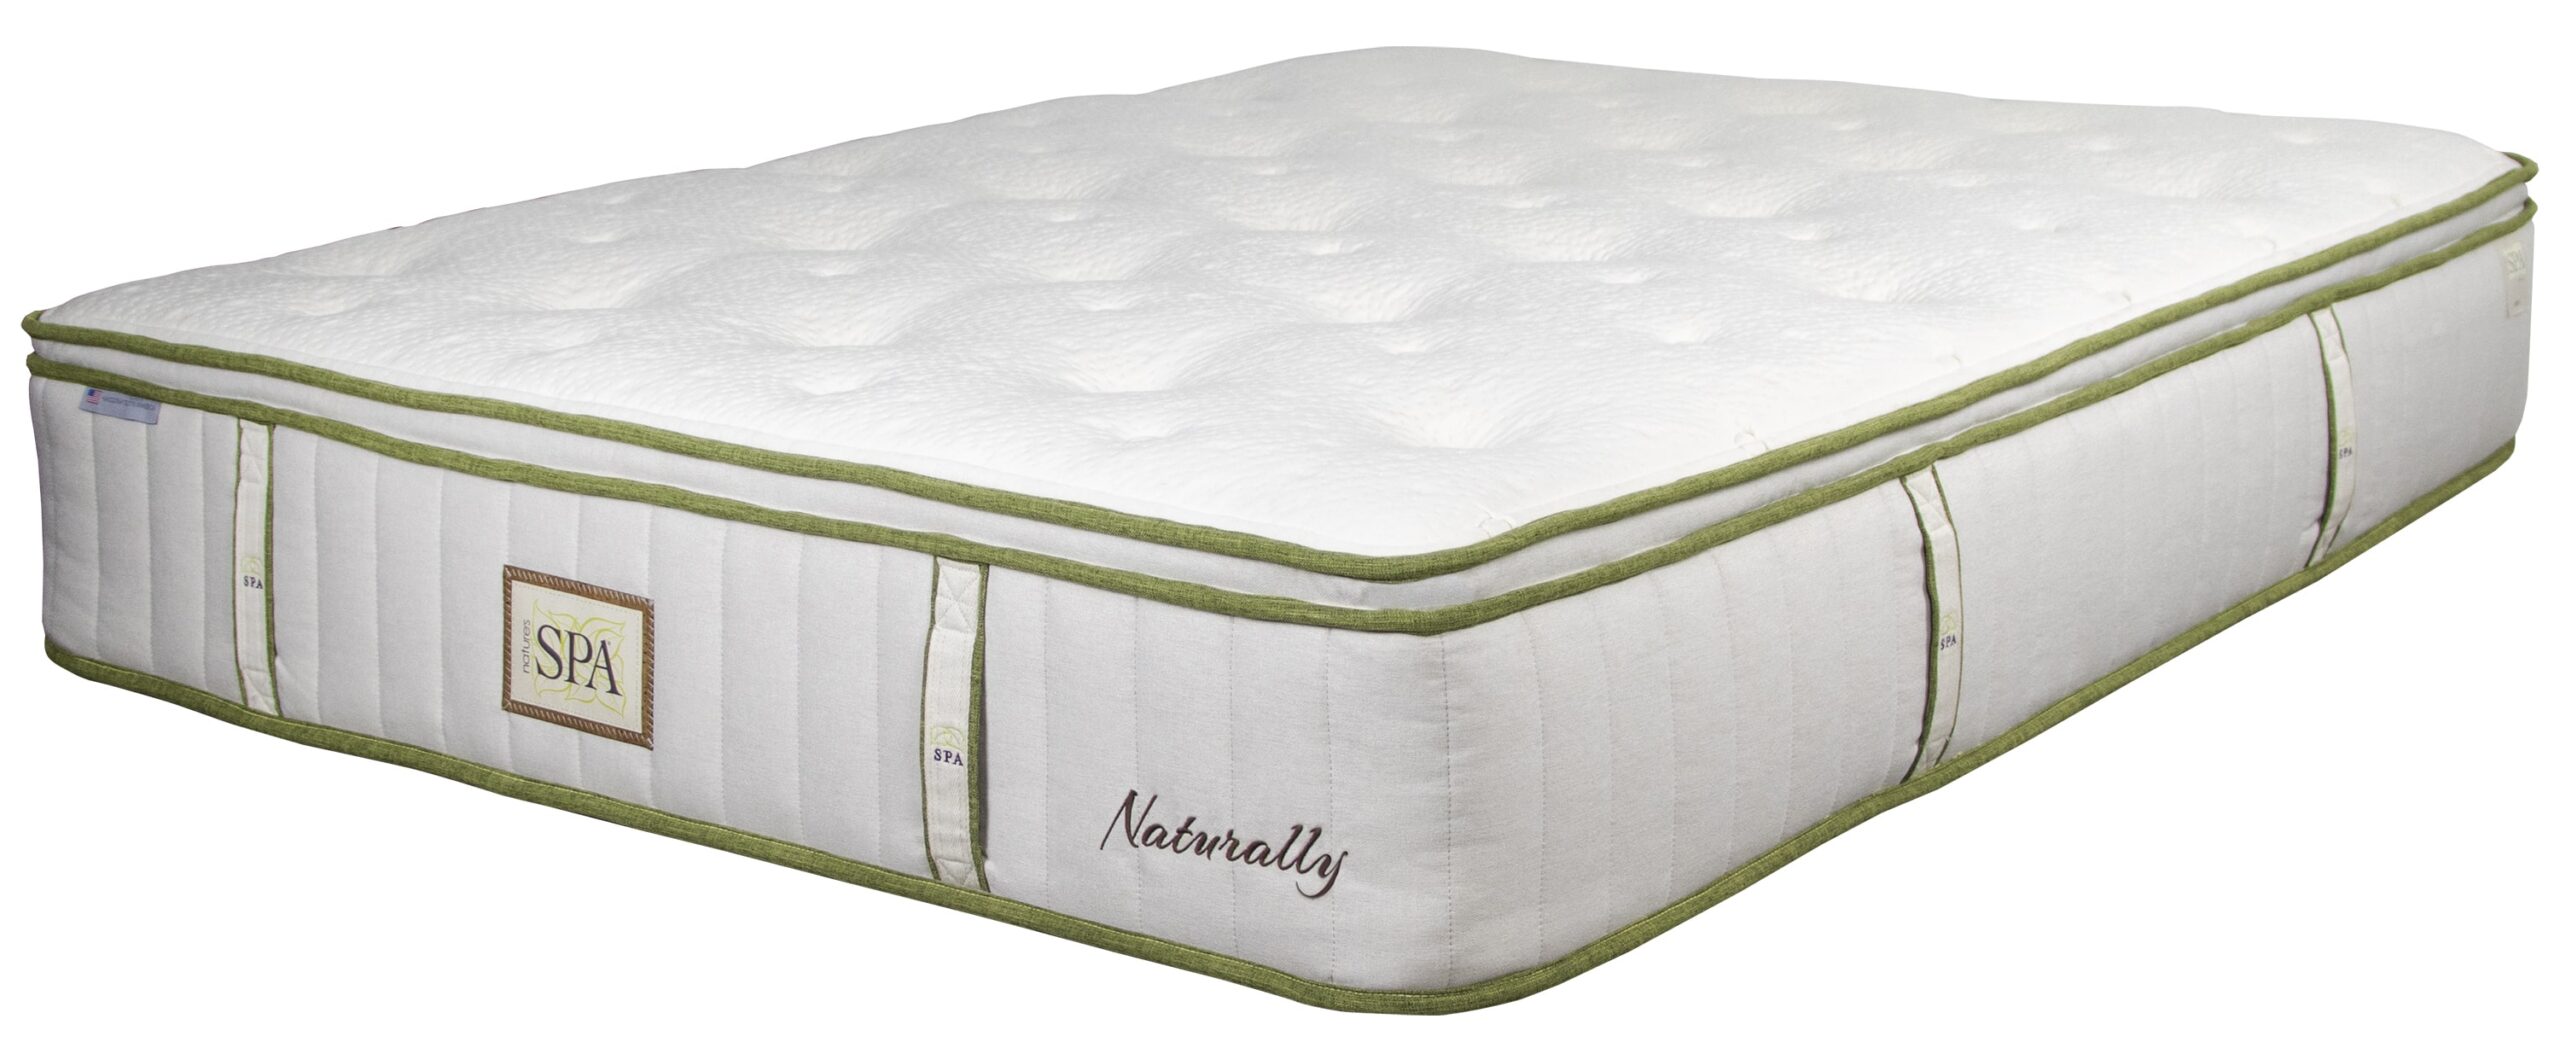 nature's spa oasis pillow top mattress